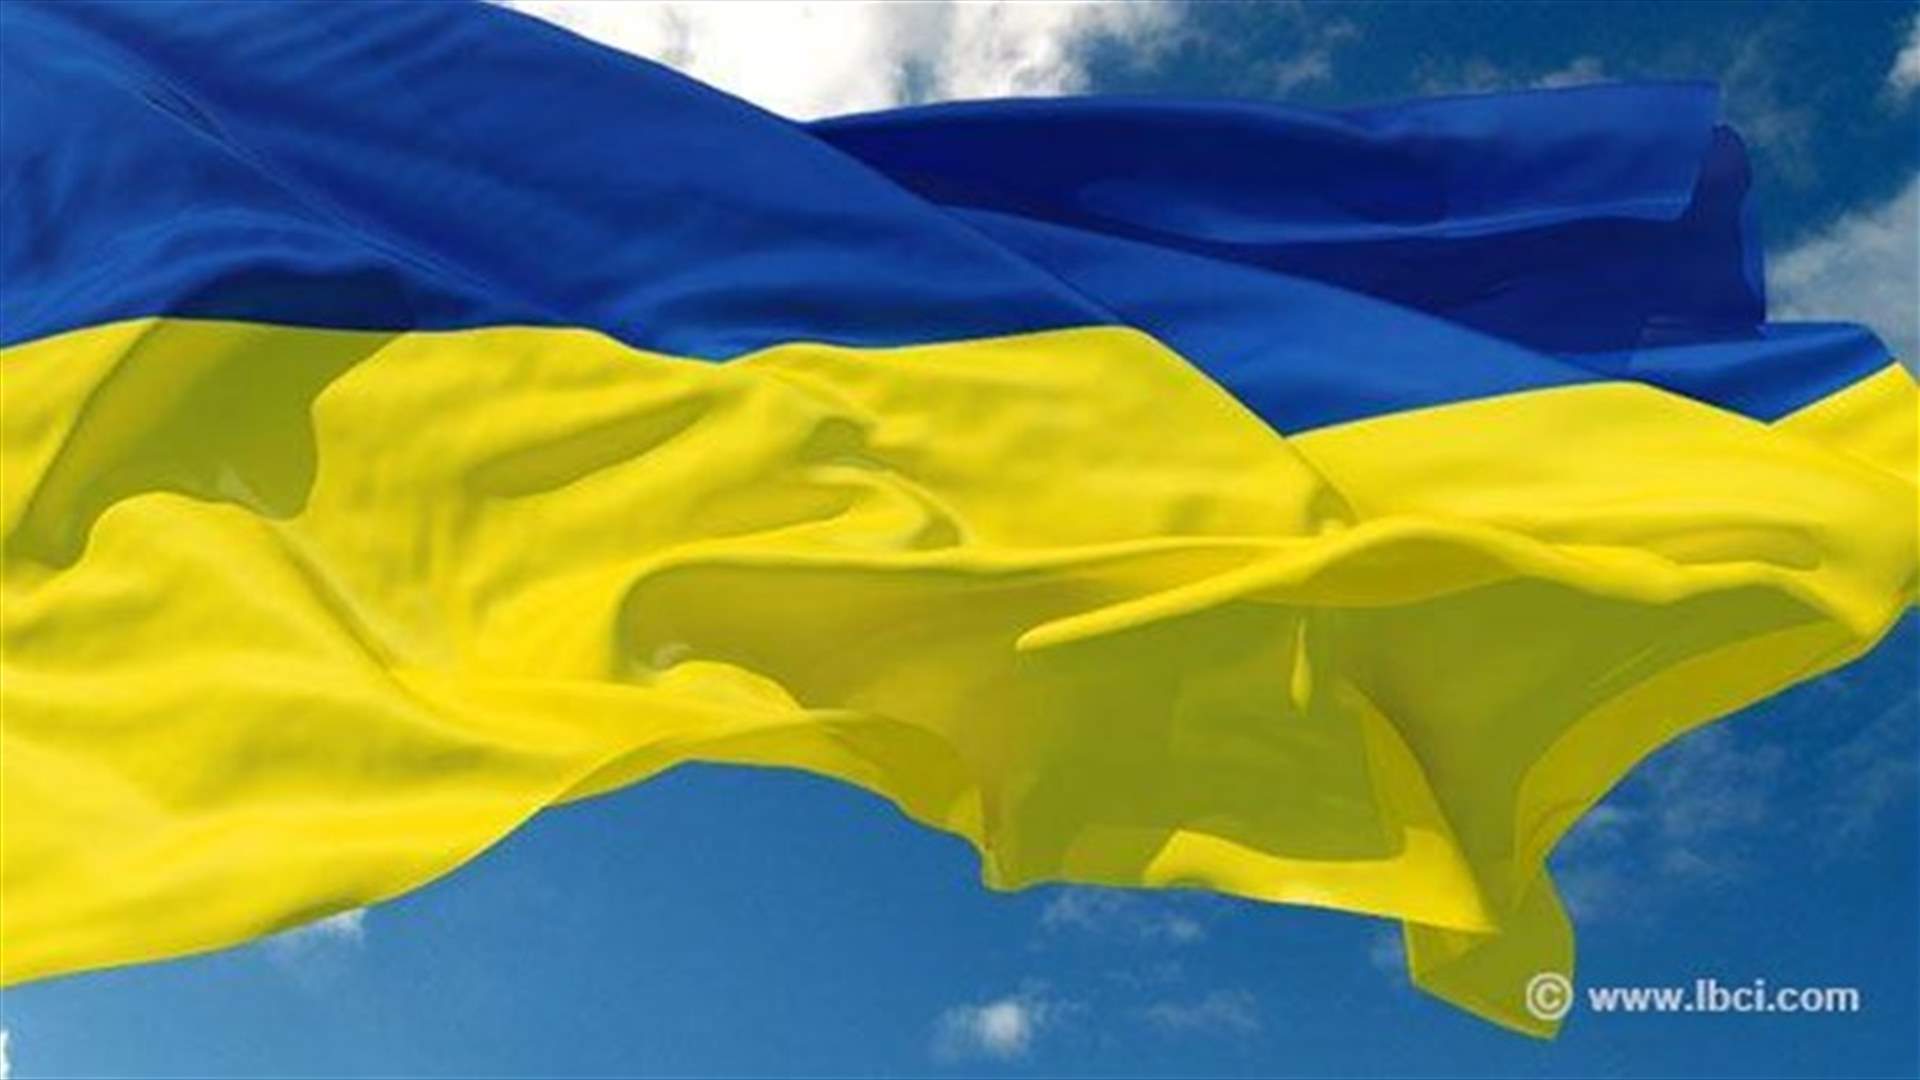 10 قتلى في اليوم الاول من العام الدراسي شرق اوكرانيا  